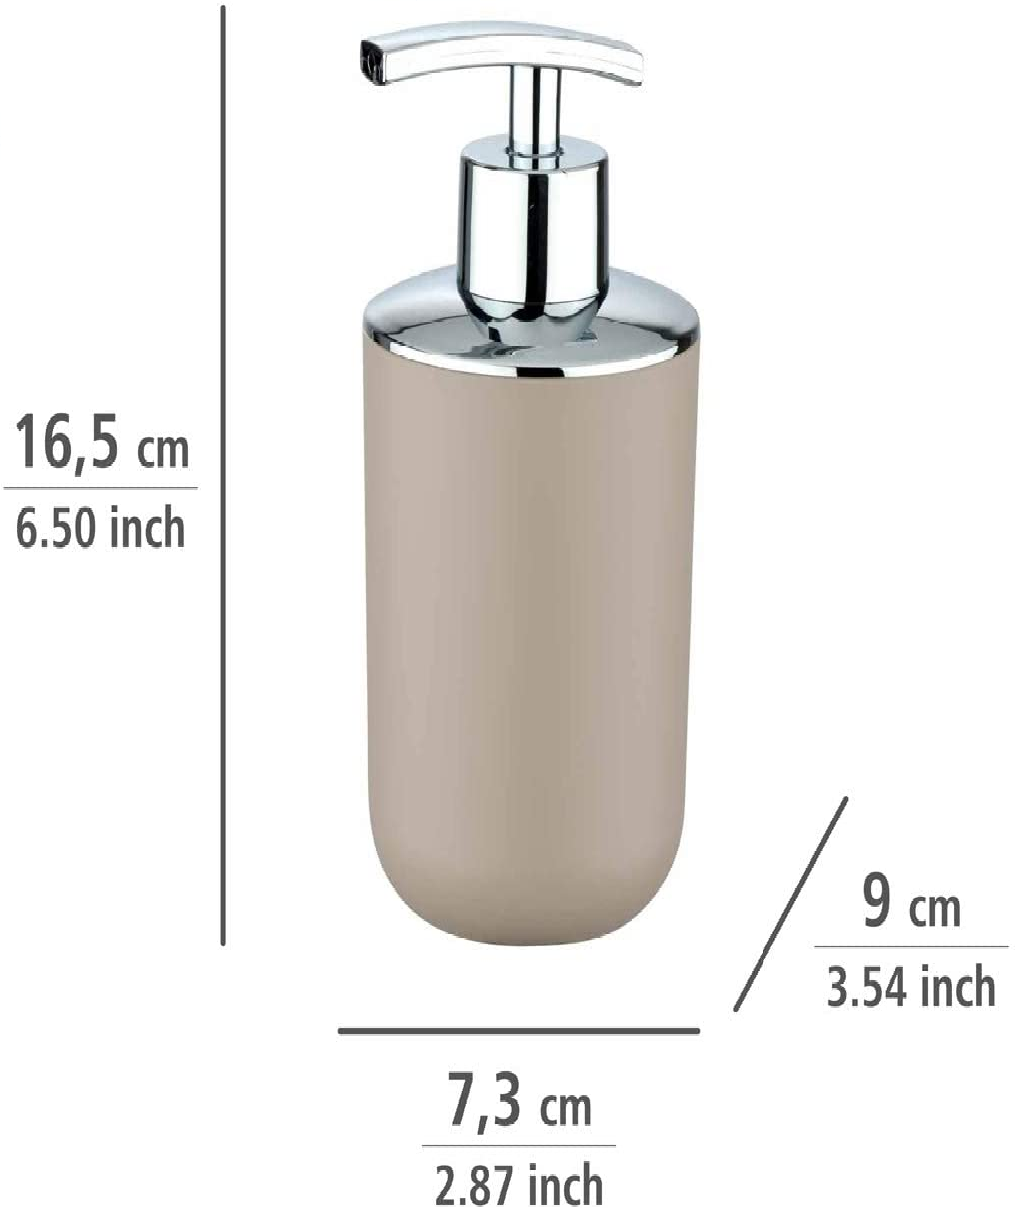 Seifenspender Brasil, nachfüllbarer Seifendosierer für Badezimmer und Küche, aus bruchsicherem Kunststoff, Fassungsvermögen: 320 ml, 7,3 x 16,5 x 9 cm, Taupe